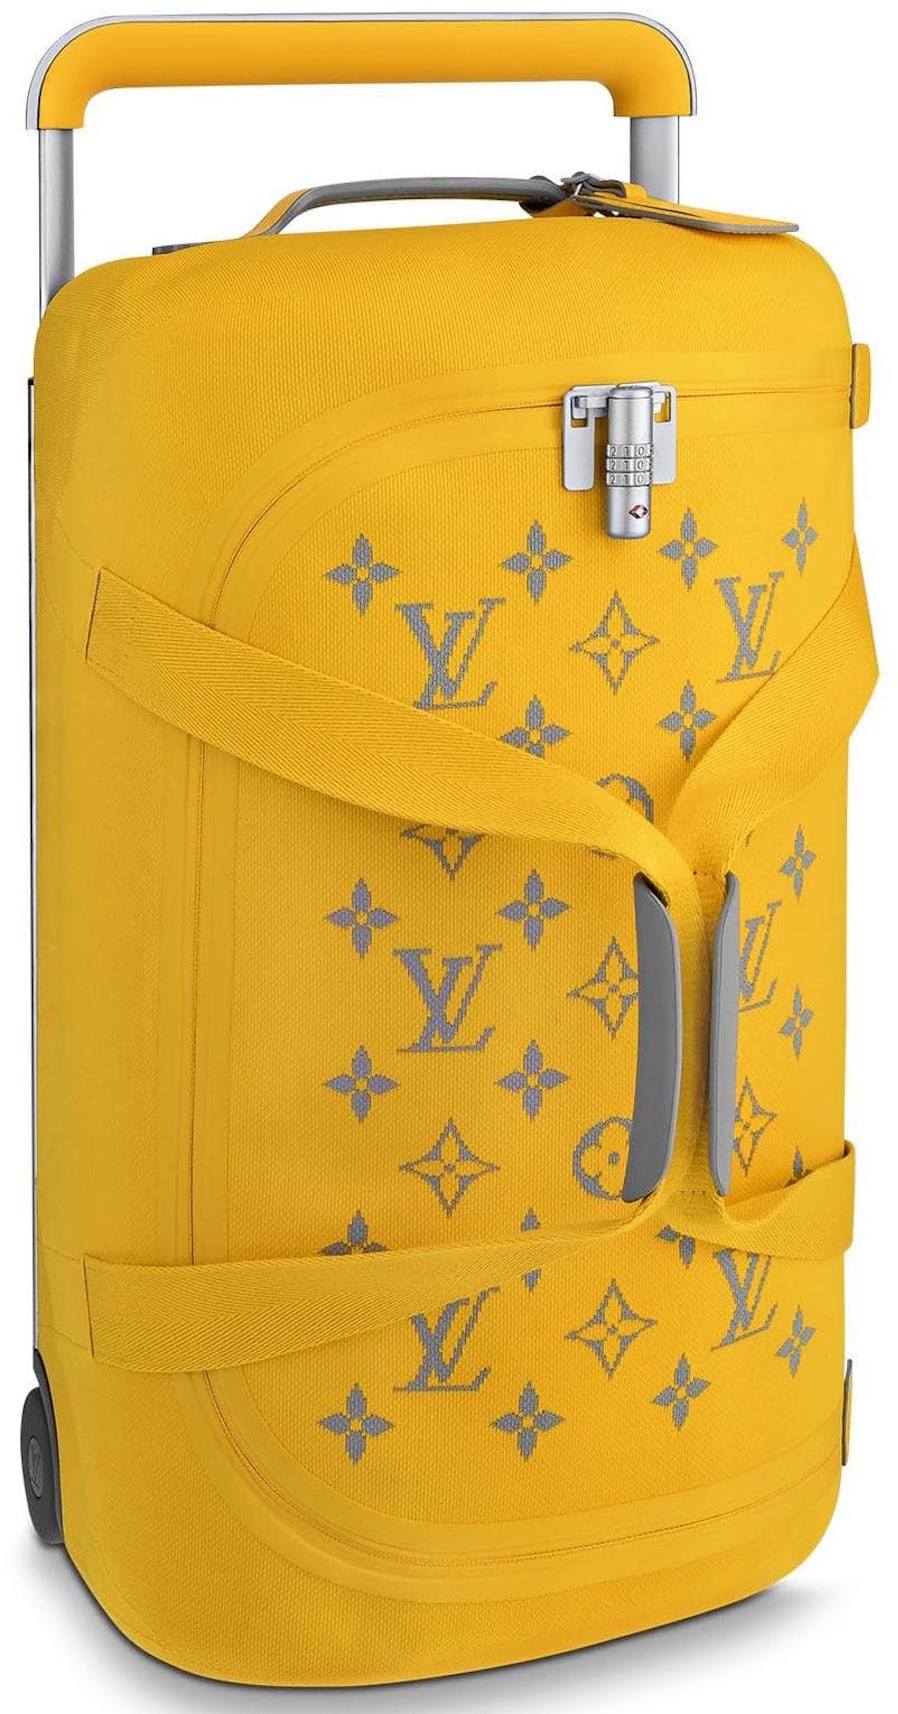 210 Louis Vuitton ideas  louis vuitton, vuitton, louis vuitton handbags